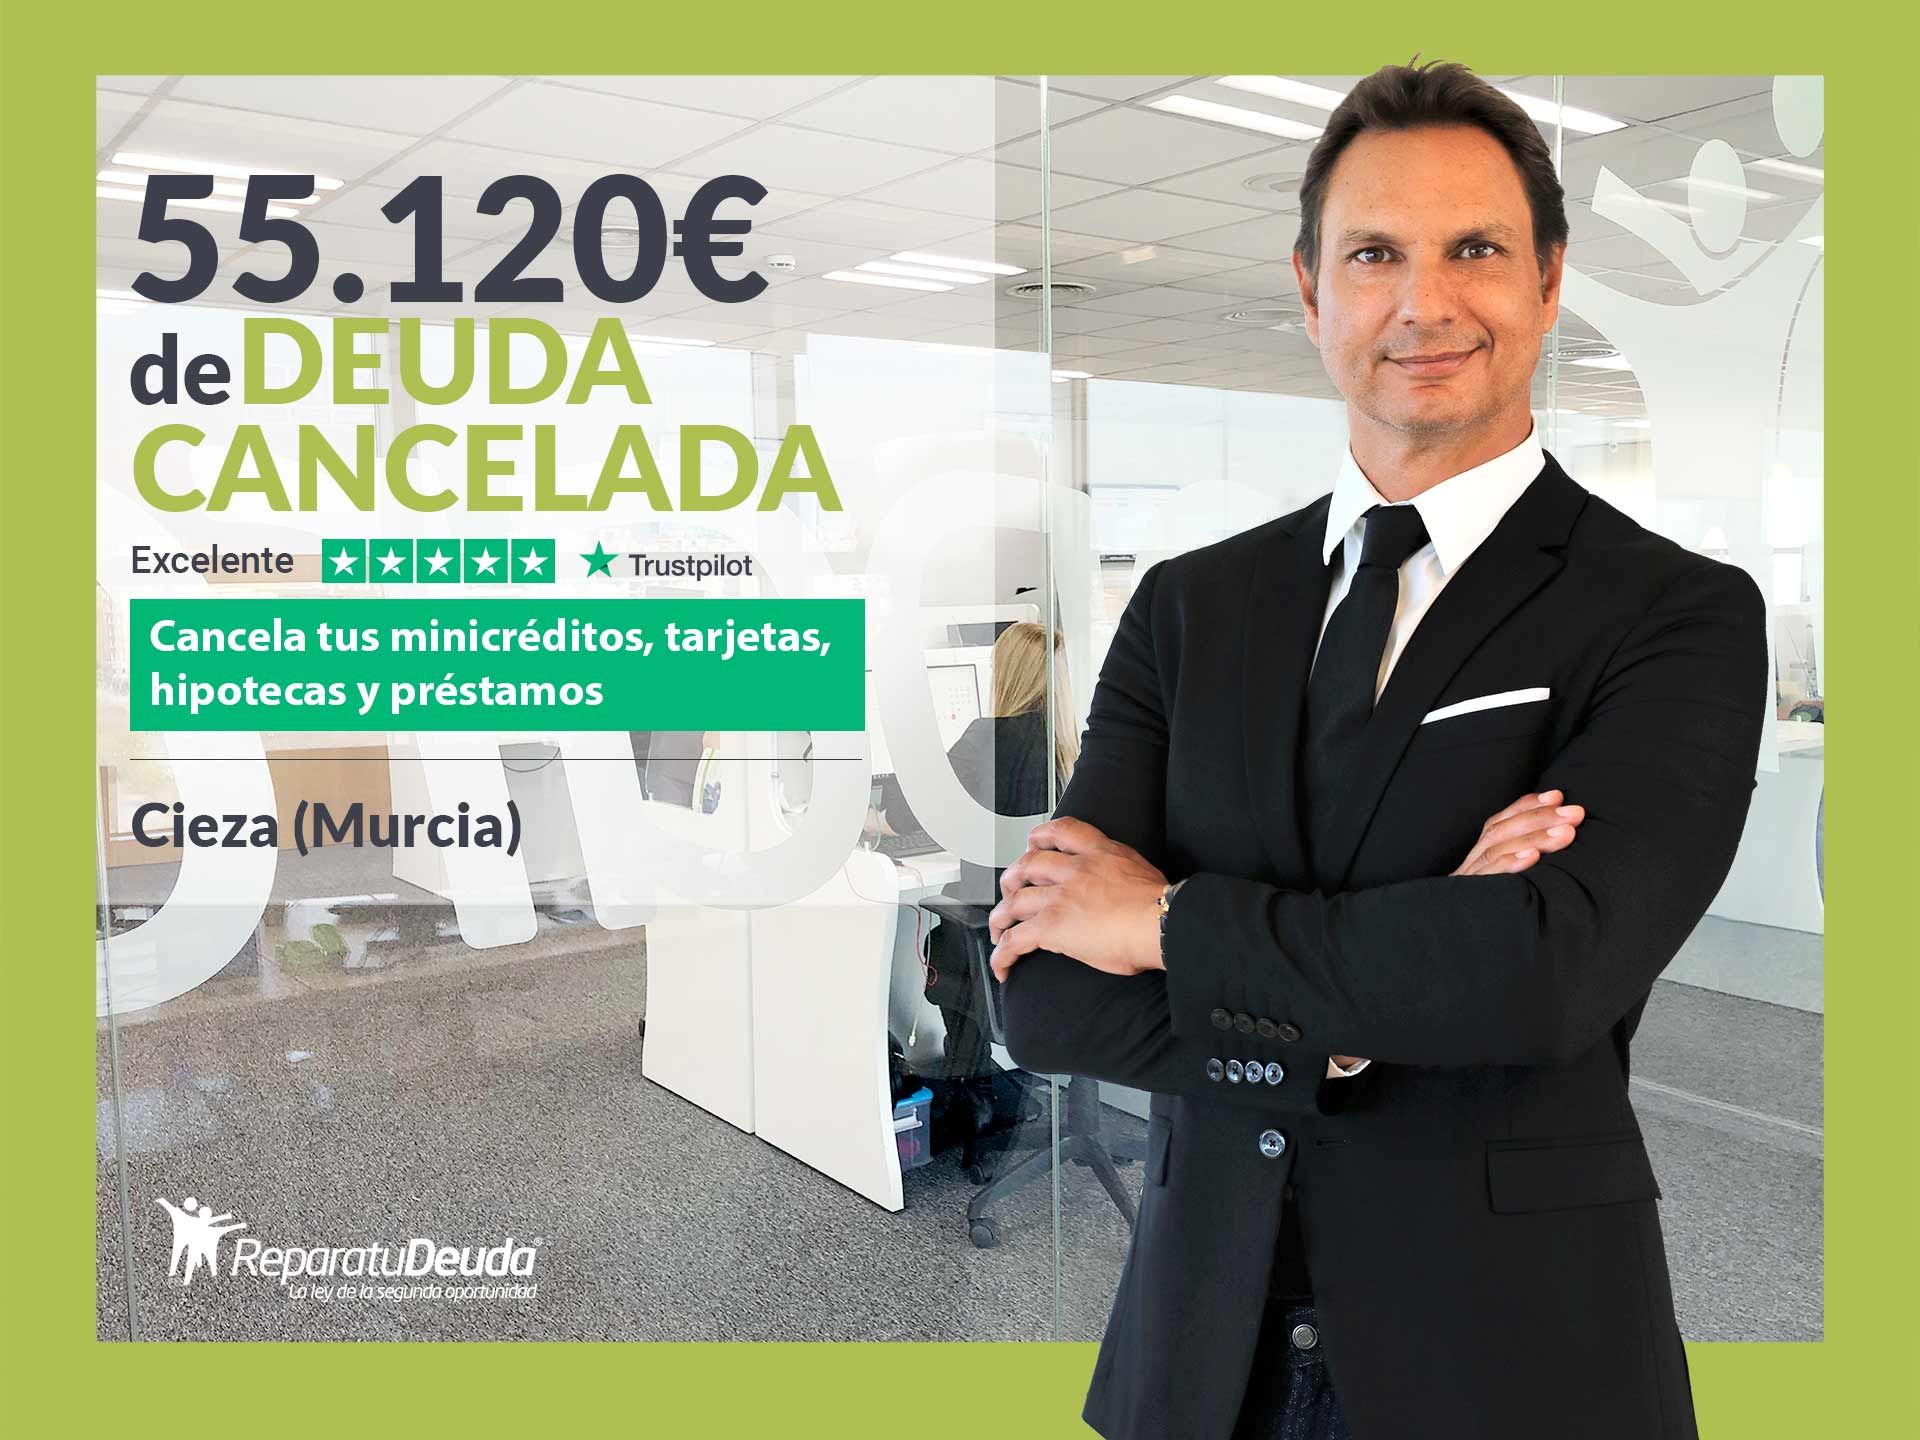 Repara tu Deuda Abogados cancela 55.120? en Cieza (Murcia) con la Ley de Segunda Oportunidad